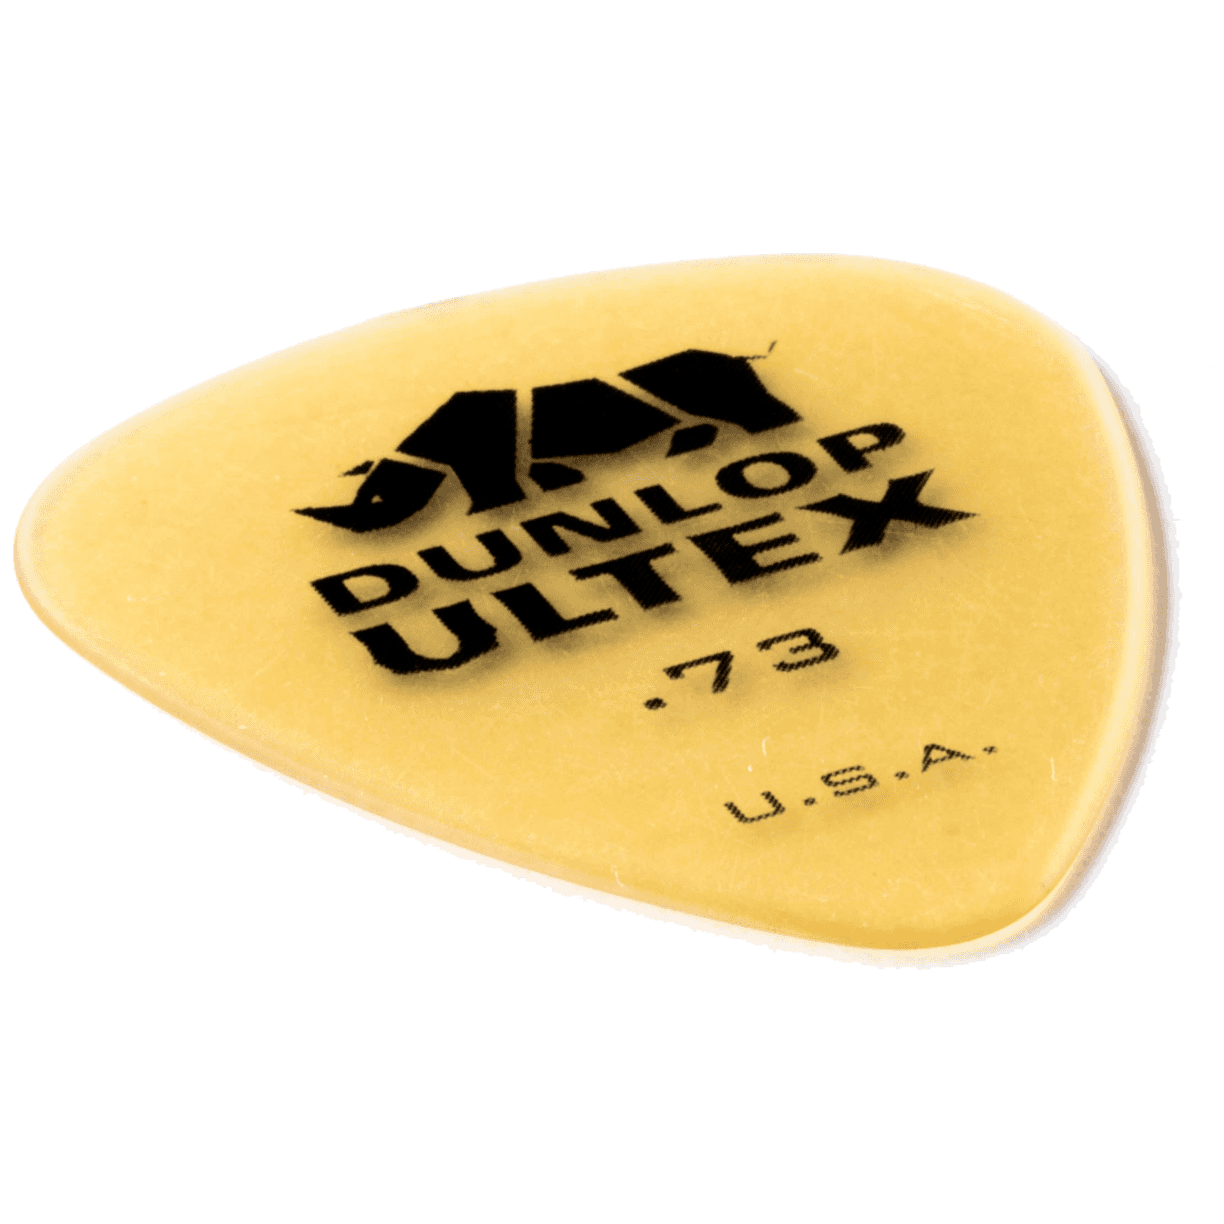 Dunlop Ultex Standard 0.73 Player's Pack 6 Stück 4